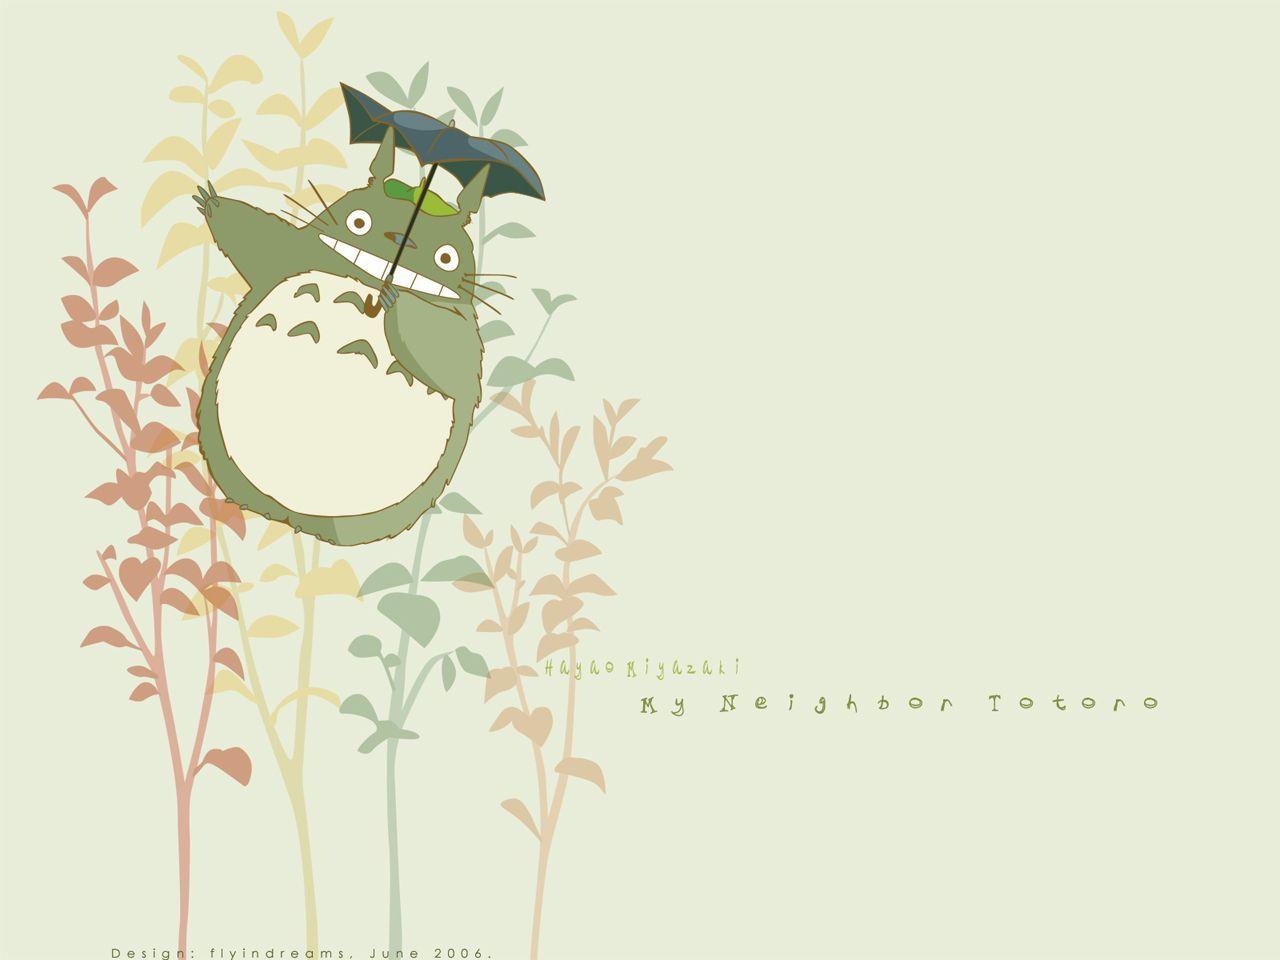 My Neighbor Totoro Wallpaper. My Neighbor Totoro Background